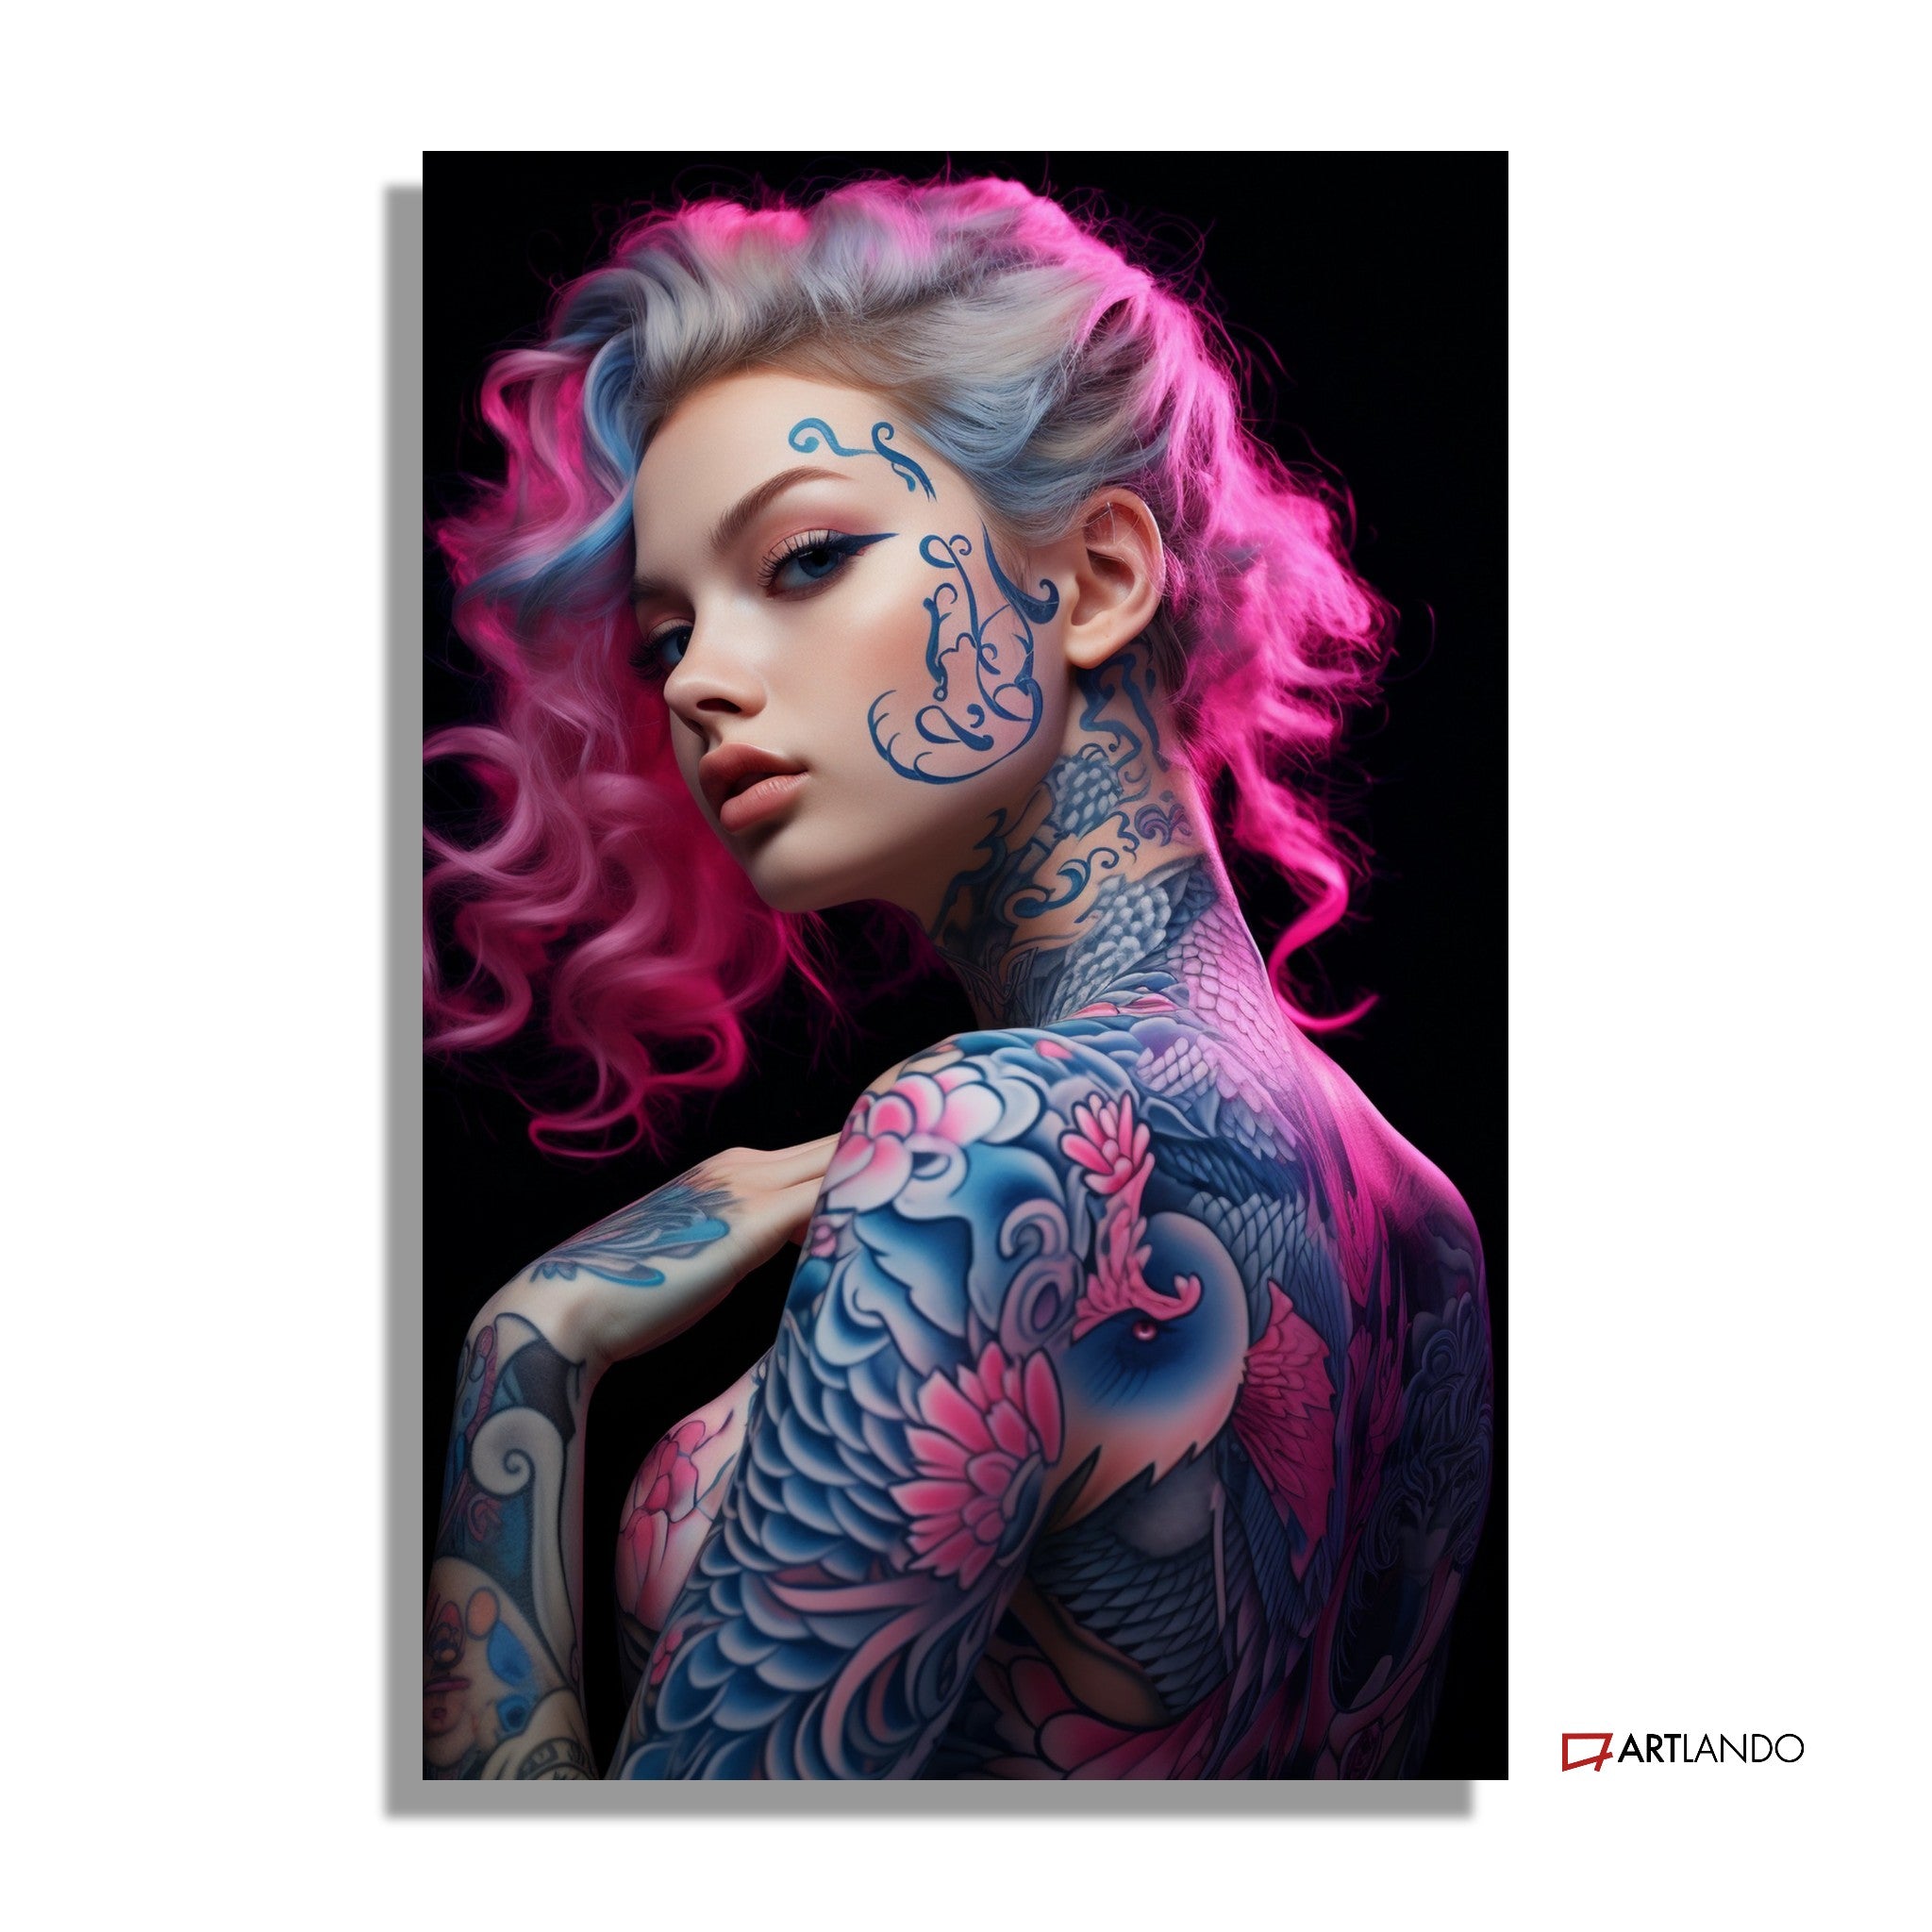 Tattoomodel mit neonpinken Haaren - Portrait Art